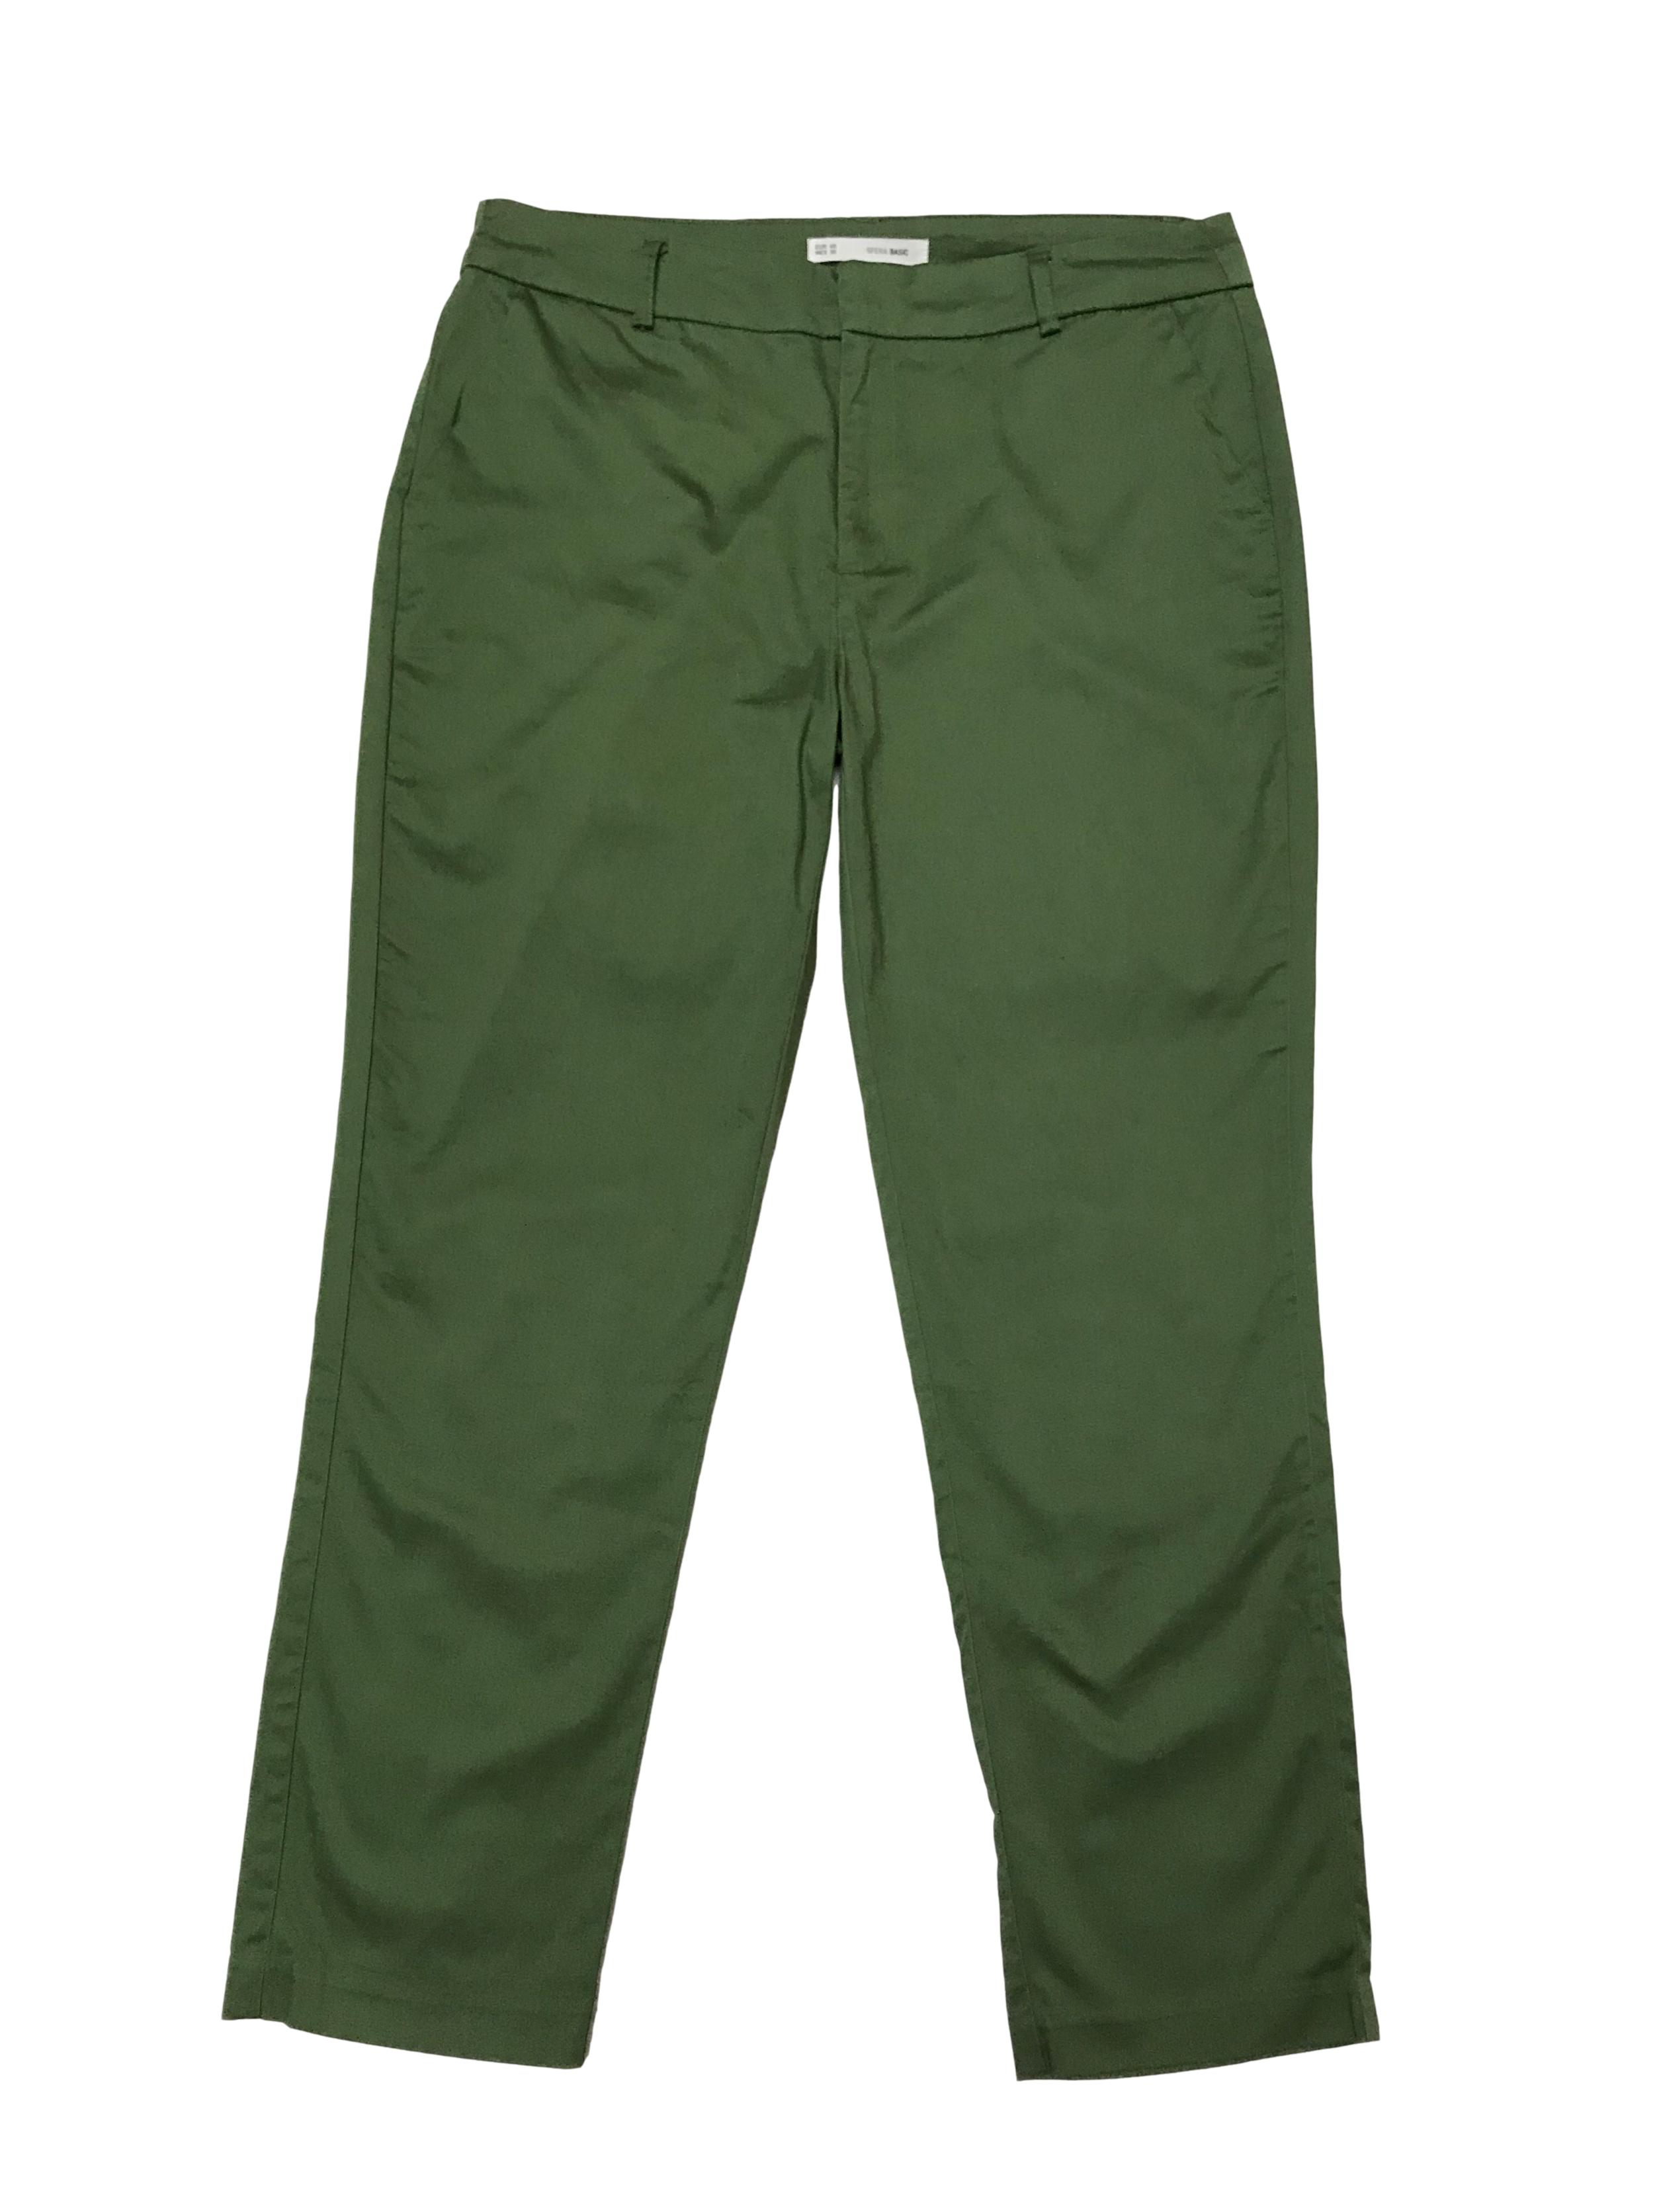 Pantalón Sfera 98% algodón con bolsillos laterales. Pretina 82cm Cadera 104cm Largo 93cm